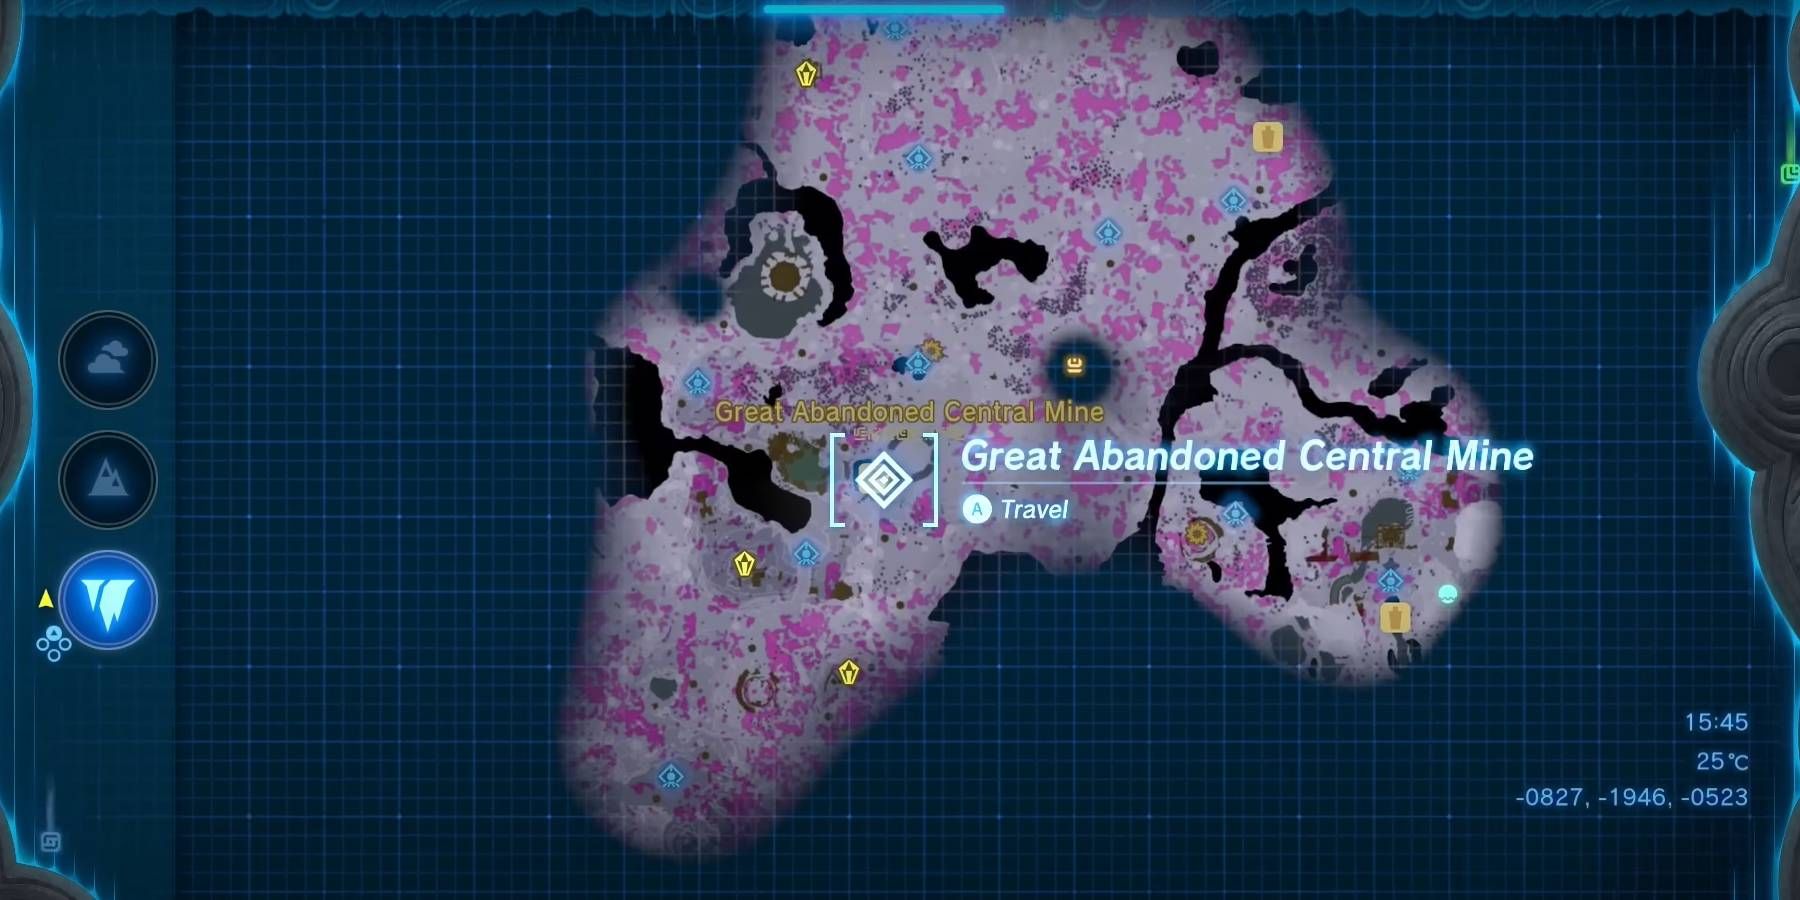 Une capture d'écran de la carte des profondeurs, se concentrant sur la zone de la grande mine centrale abandonnée dans The Legend of Zelda: Tears of the Kingdom.